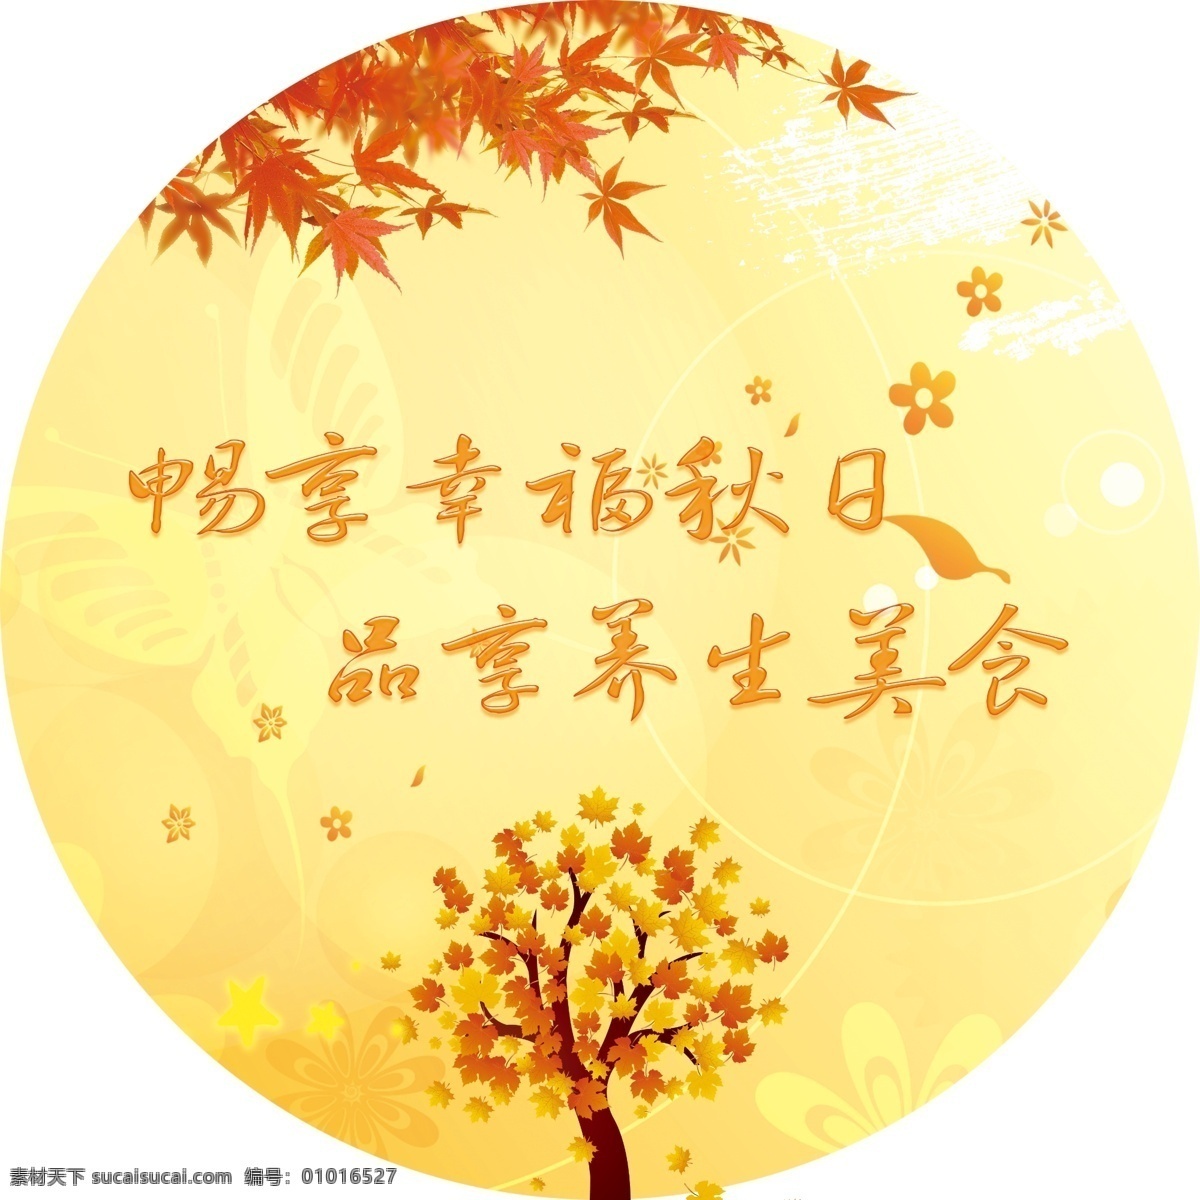 秋日 秋天 枫叶 花朵 笔刷 蝴蝶 枫叶树 树 橙色背景 底纹 广告设计模板 源文件